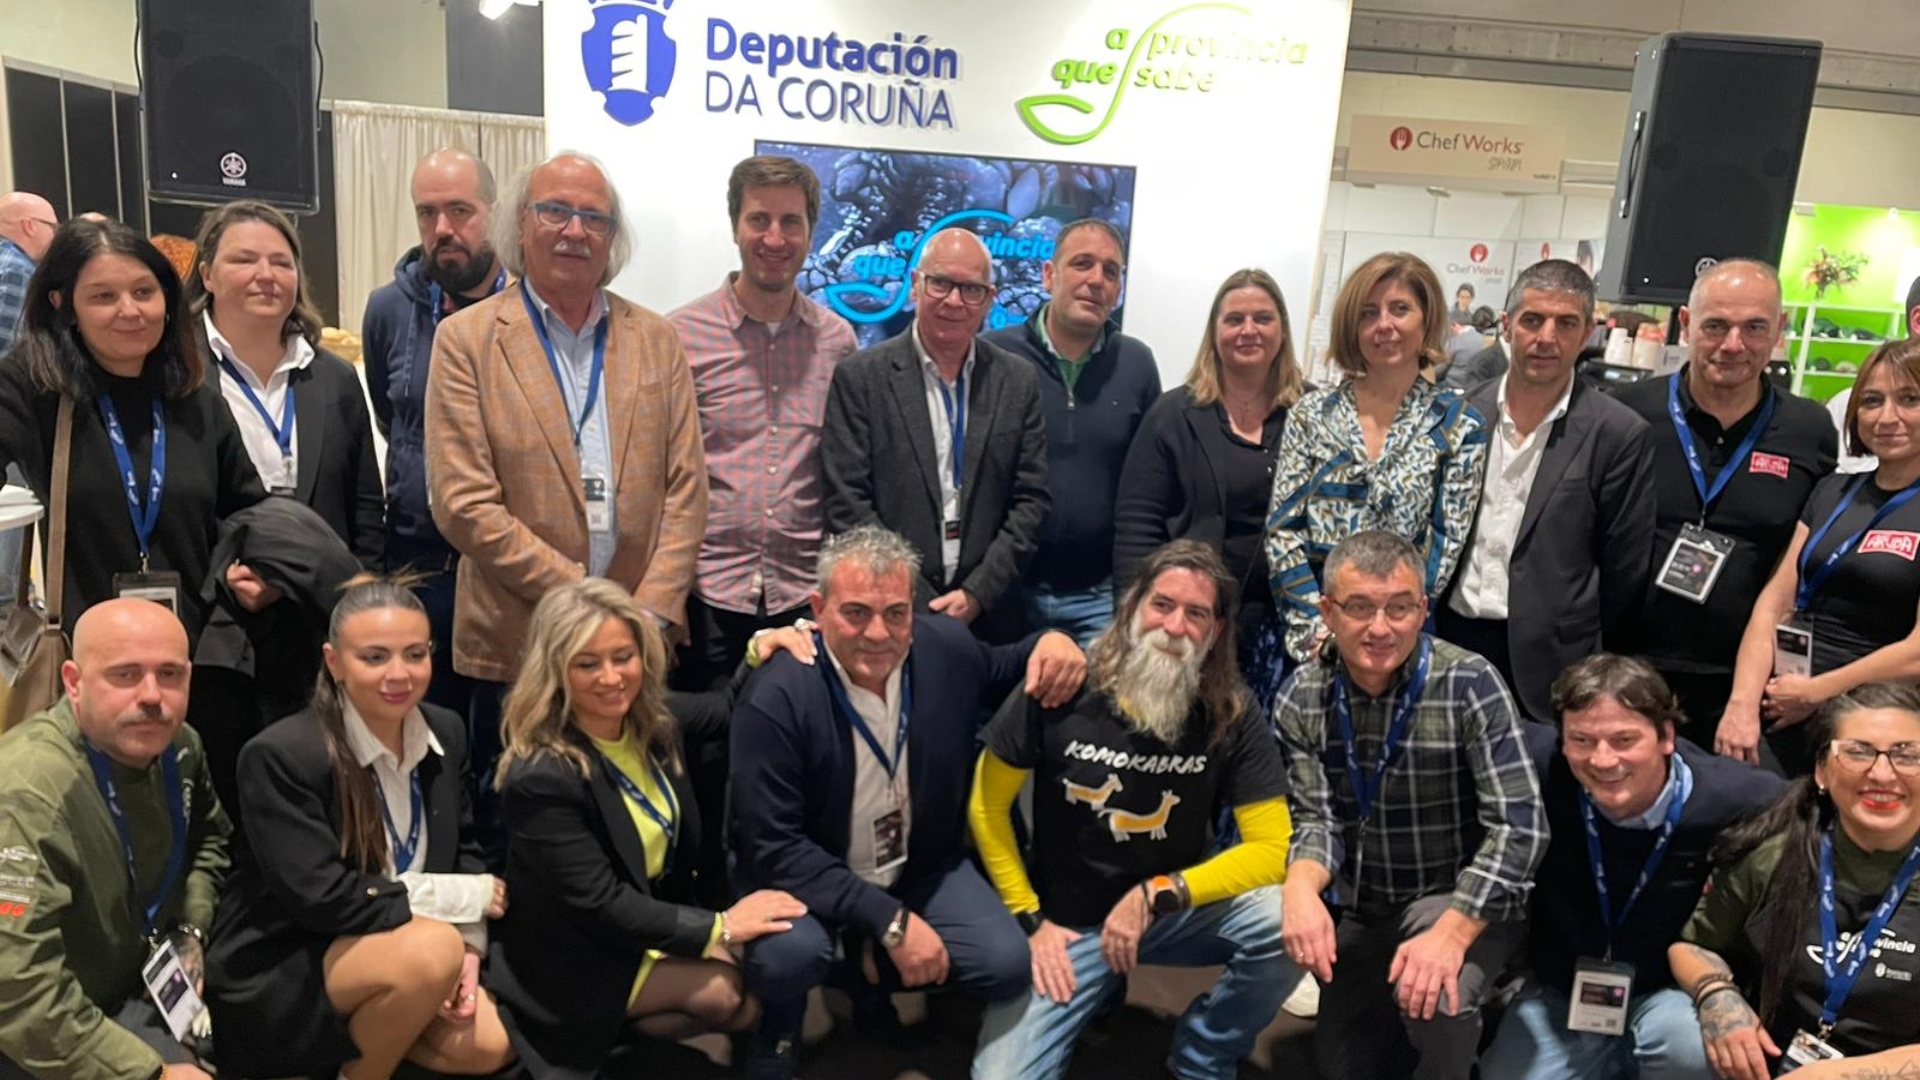 Los productores presentes en Madrid Fusión de la mano de la Deputación da Coruña | DEPUTACIÓN DA CORUÑA